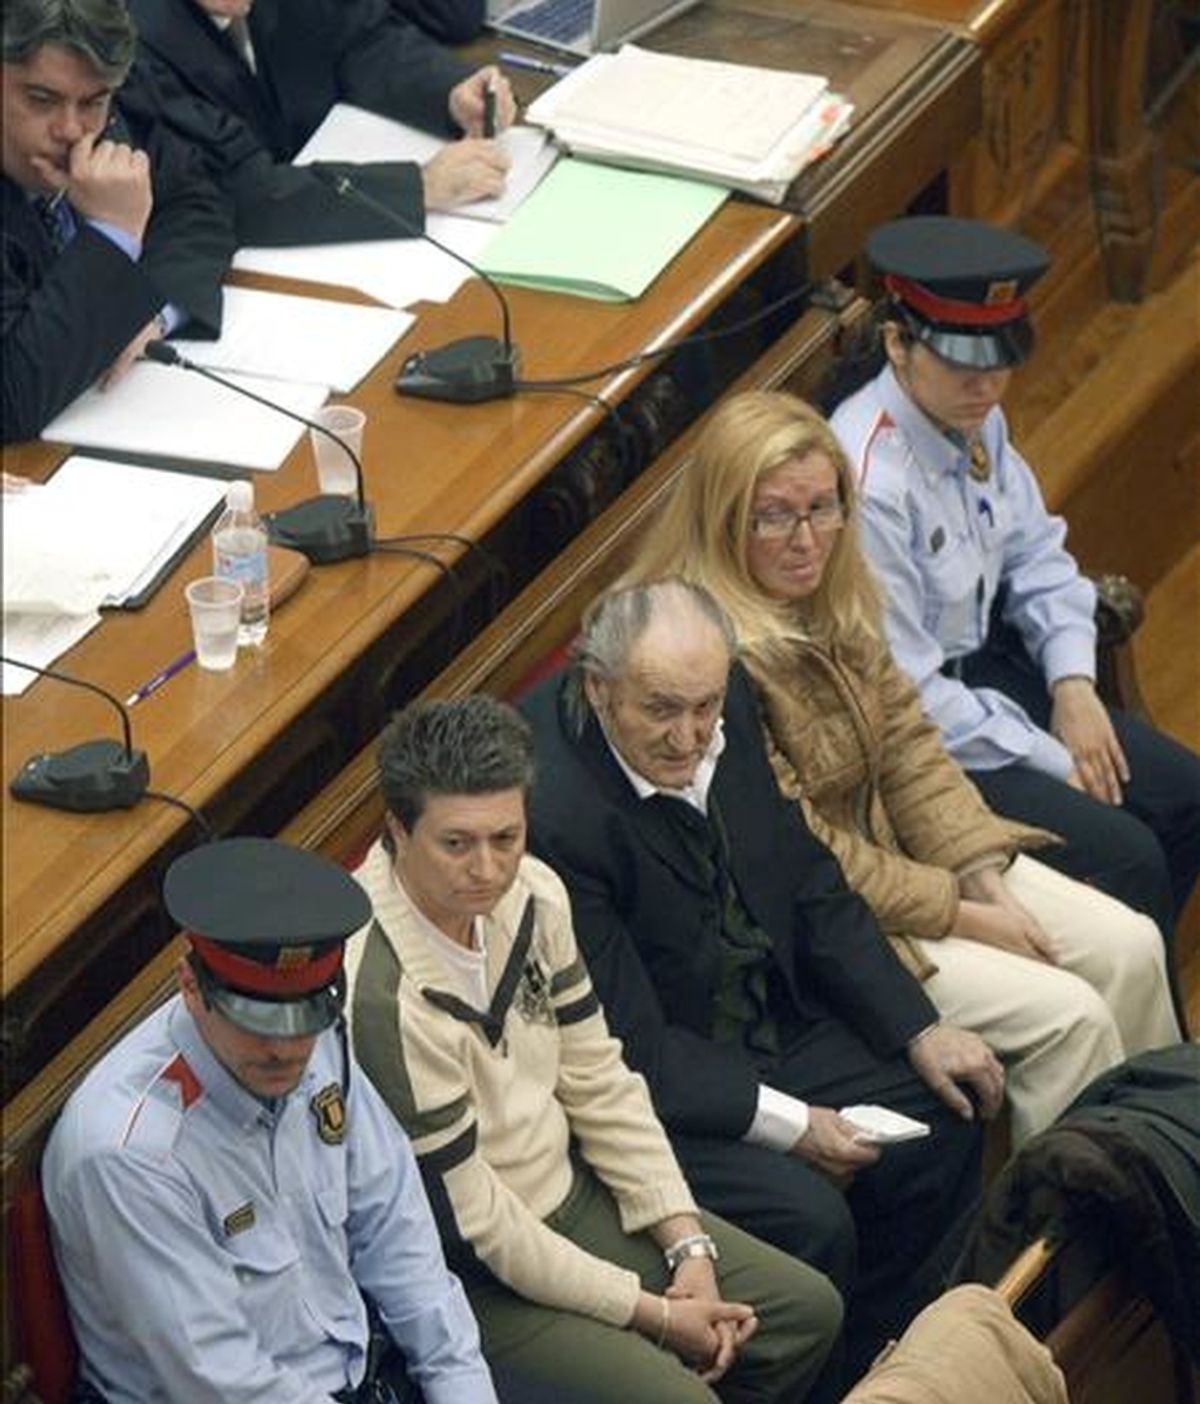 De izquierda a derecha, Anabel Toyas, Joan Sesplugues y Carme Badia, los tres acusados de asesinar a la psicóloga Anna Permanyer, durante un juicio celebrado en 2008 en la Audiencia de Barcelona. EFE/Archivo